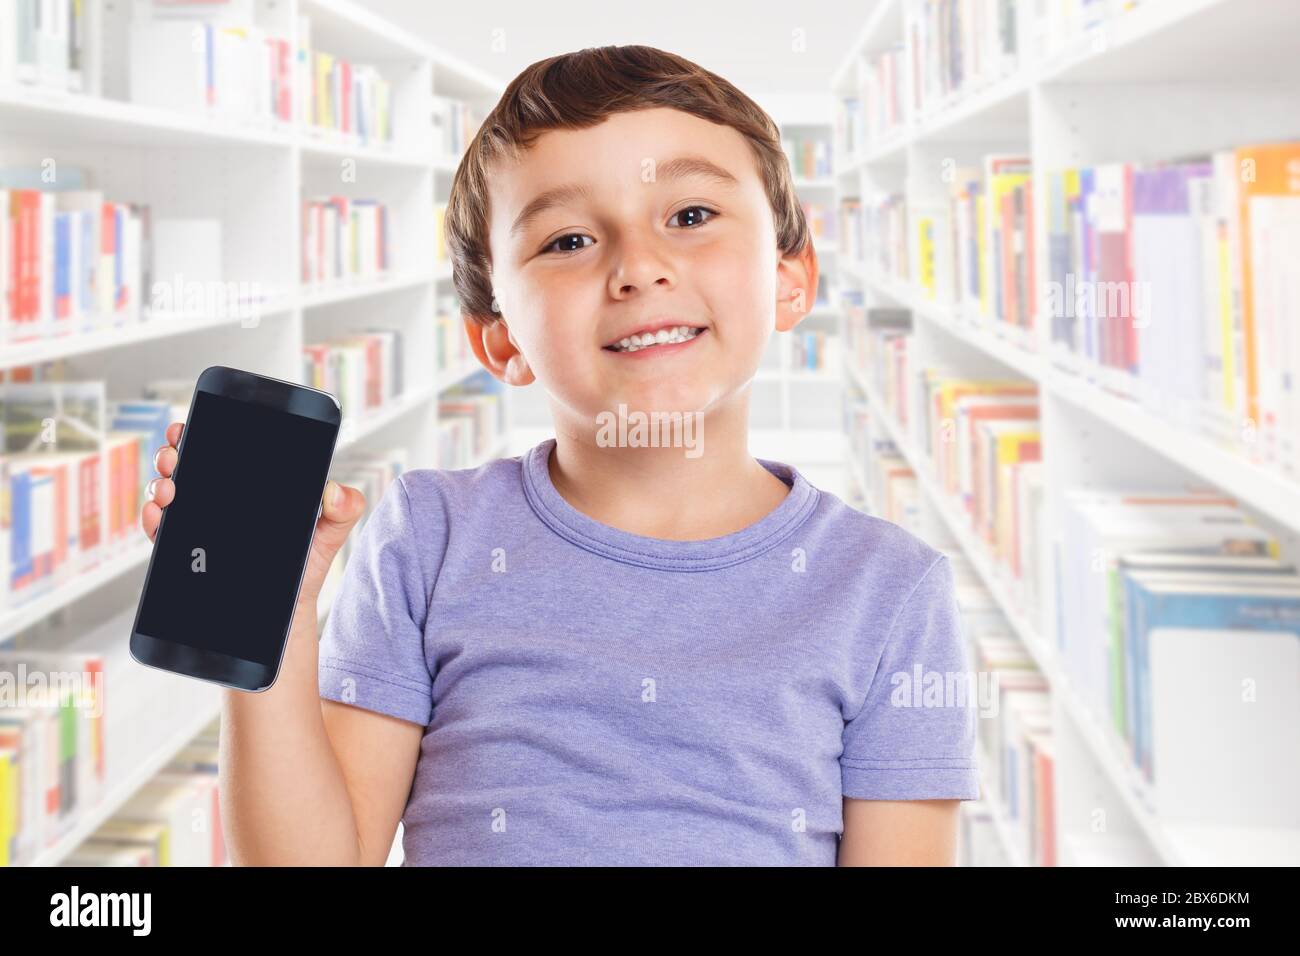 Petit garçon enfant tenant smartphone smartphone smartphone smartphone bibliothèque téléphone portable marketing publicité apprendre Banque D'Images